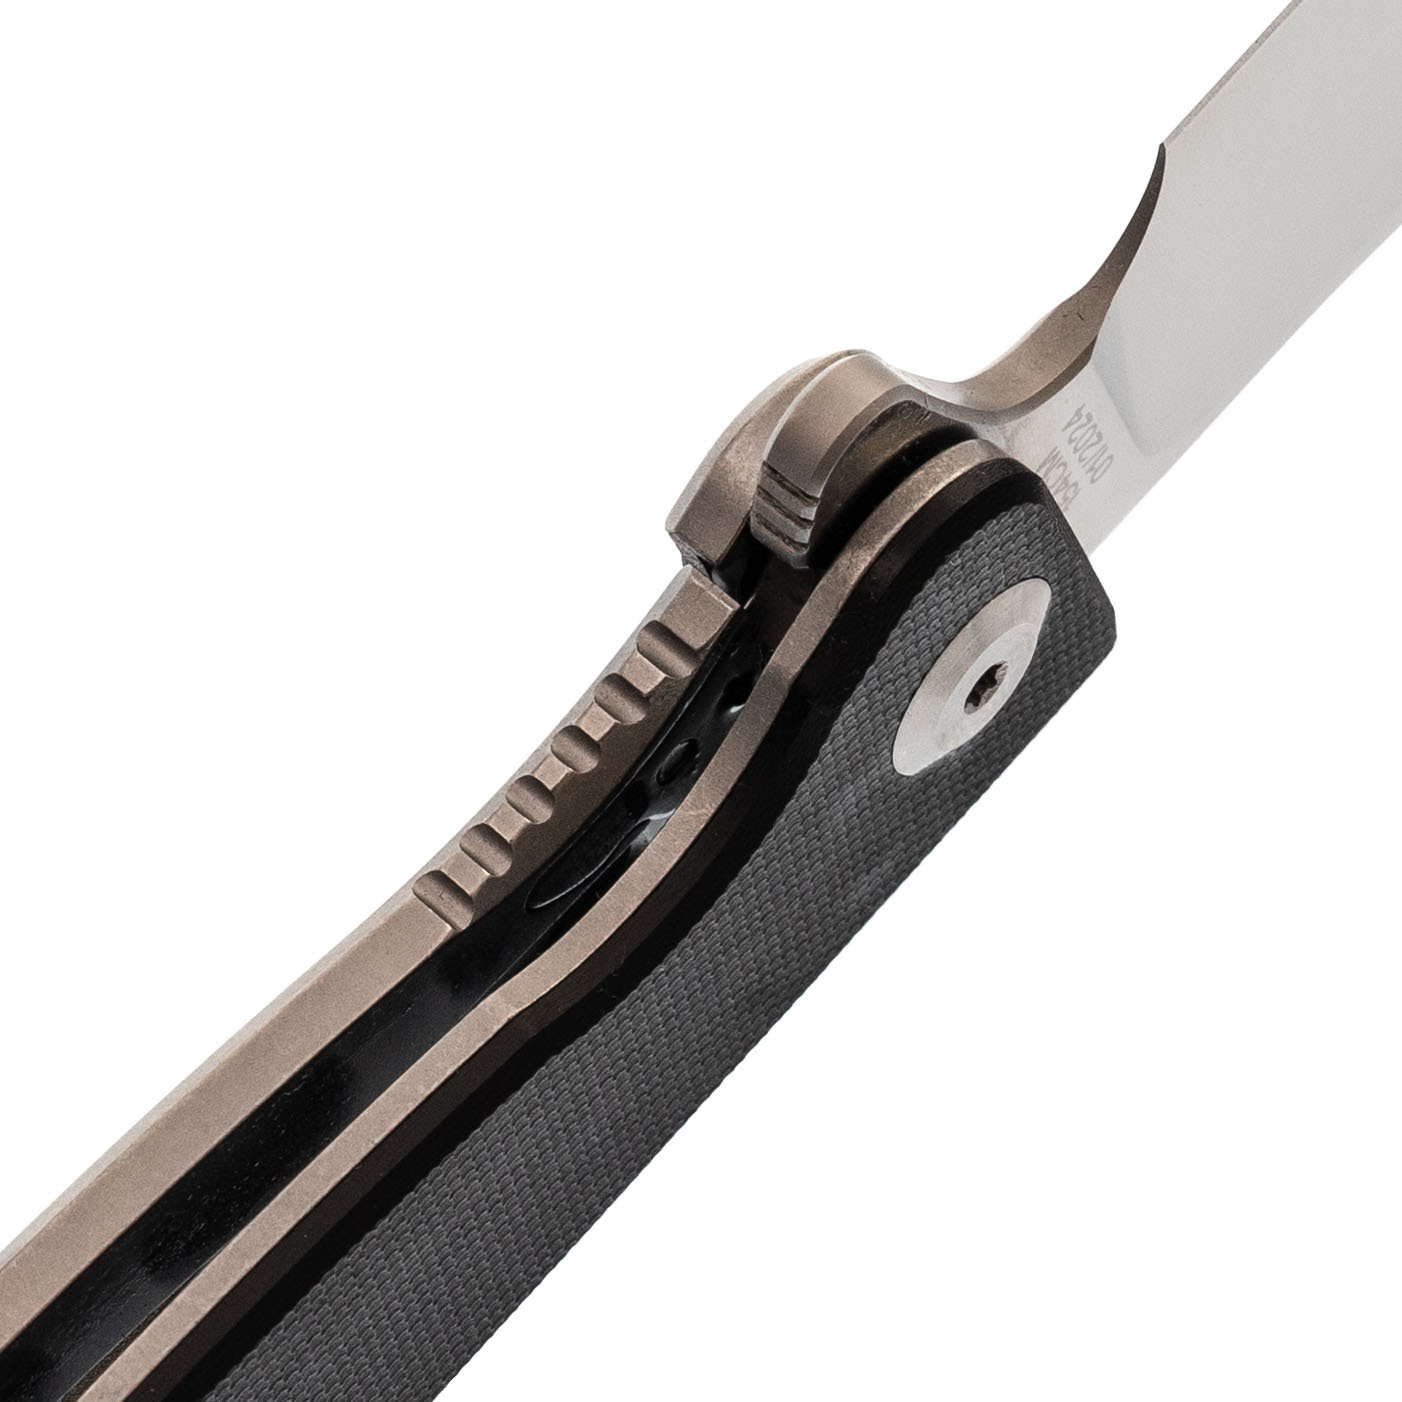 Складной нож Daggerr Condor Black Satin, сталь 154CM, рукоять G10 - фото 4